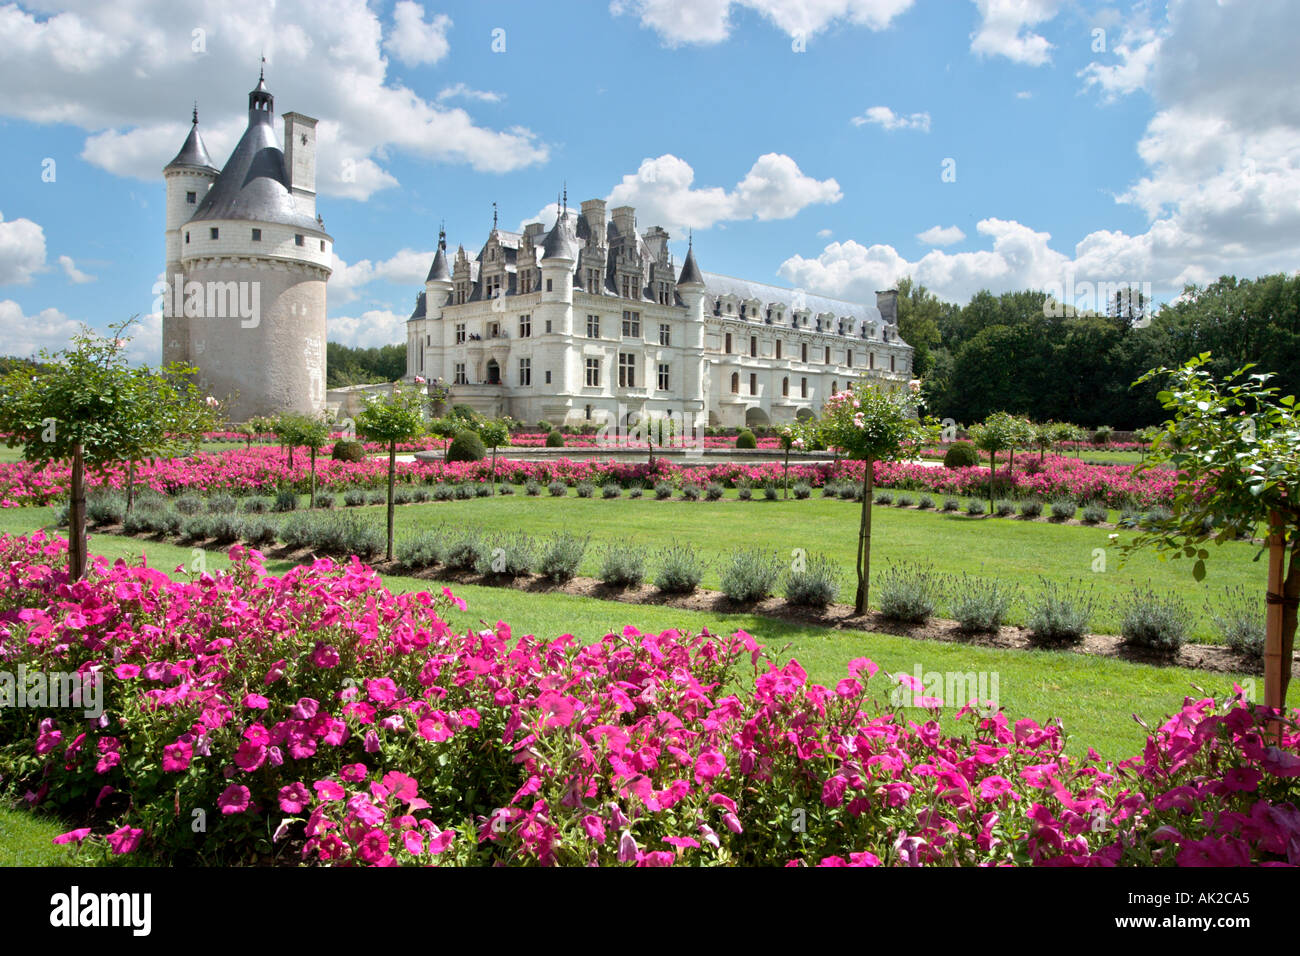 Chateau de Chenonceau e i suoi giardini, la Valle della Loira, Francia Foto Stock